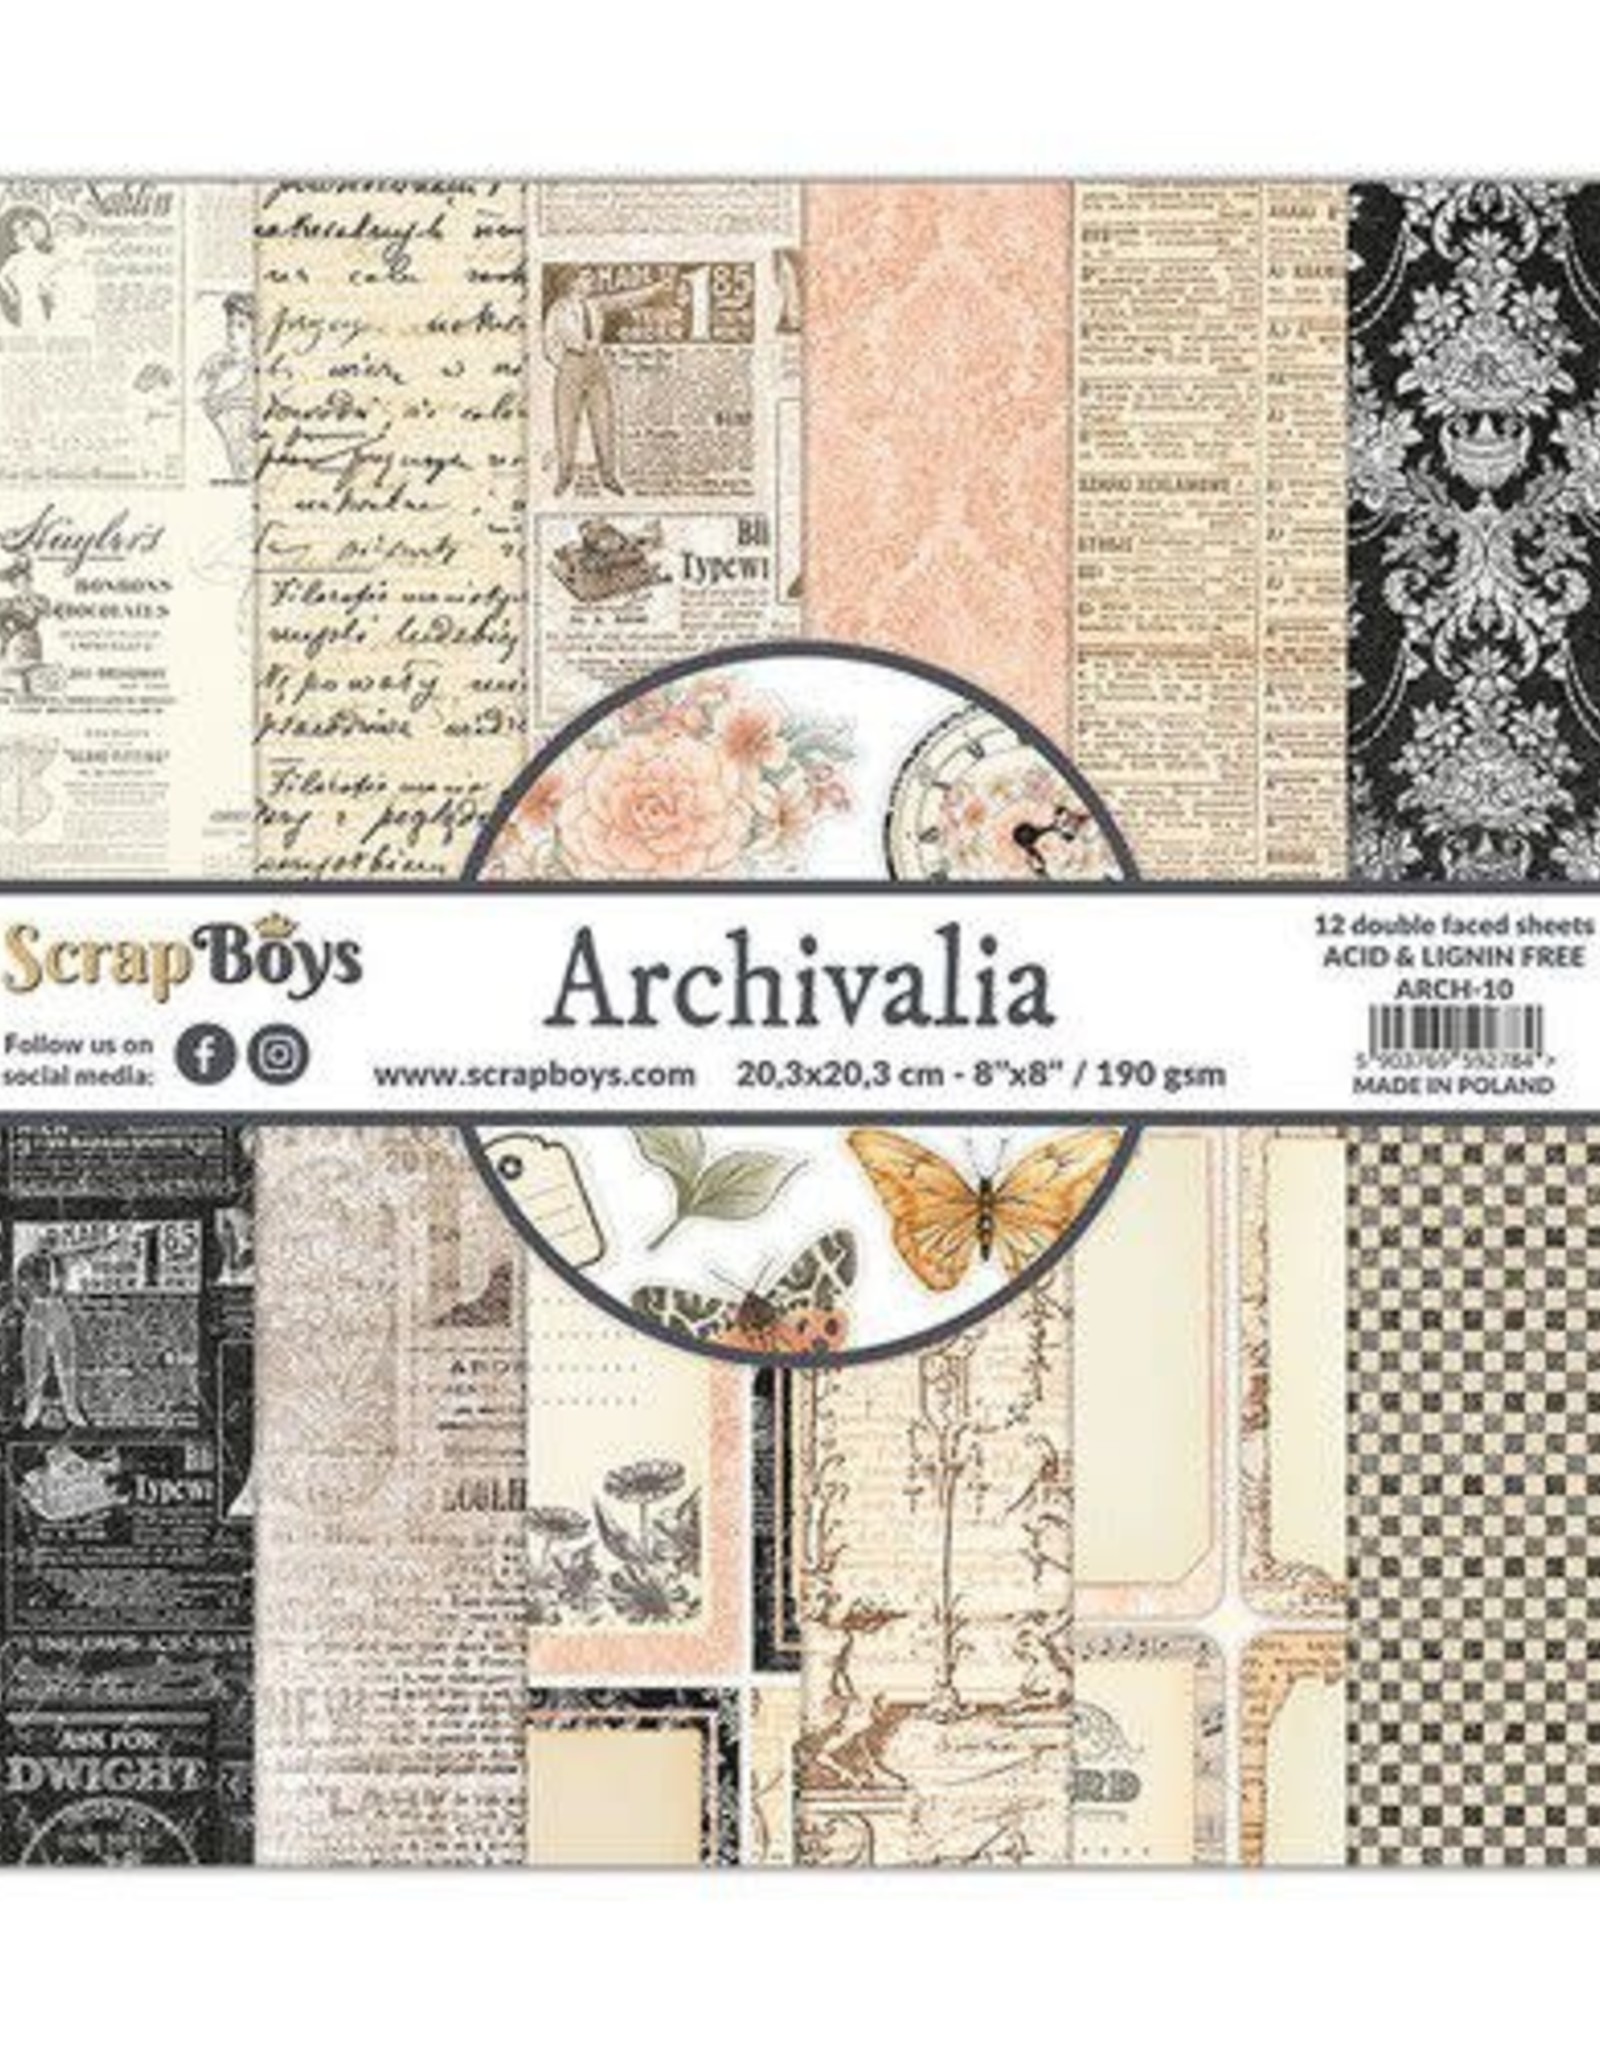 Scrapboys ScrapBoys Archivalia paperpad 12 vl+cut out elements-DZ ARCH-10 190gr 20,3x20,3cm